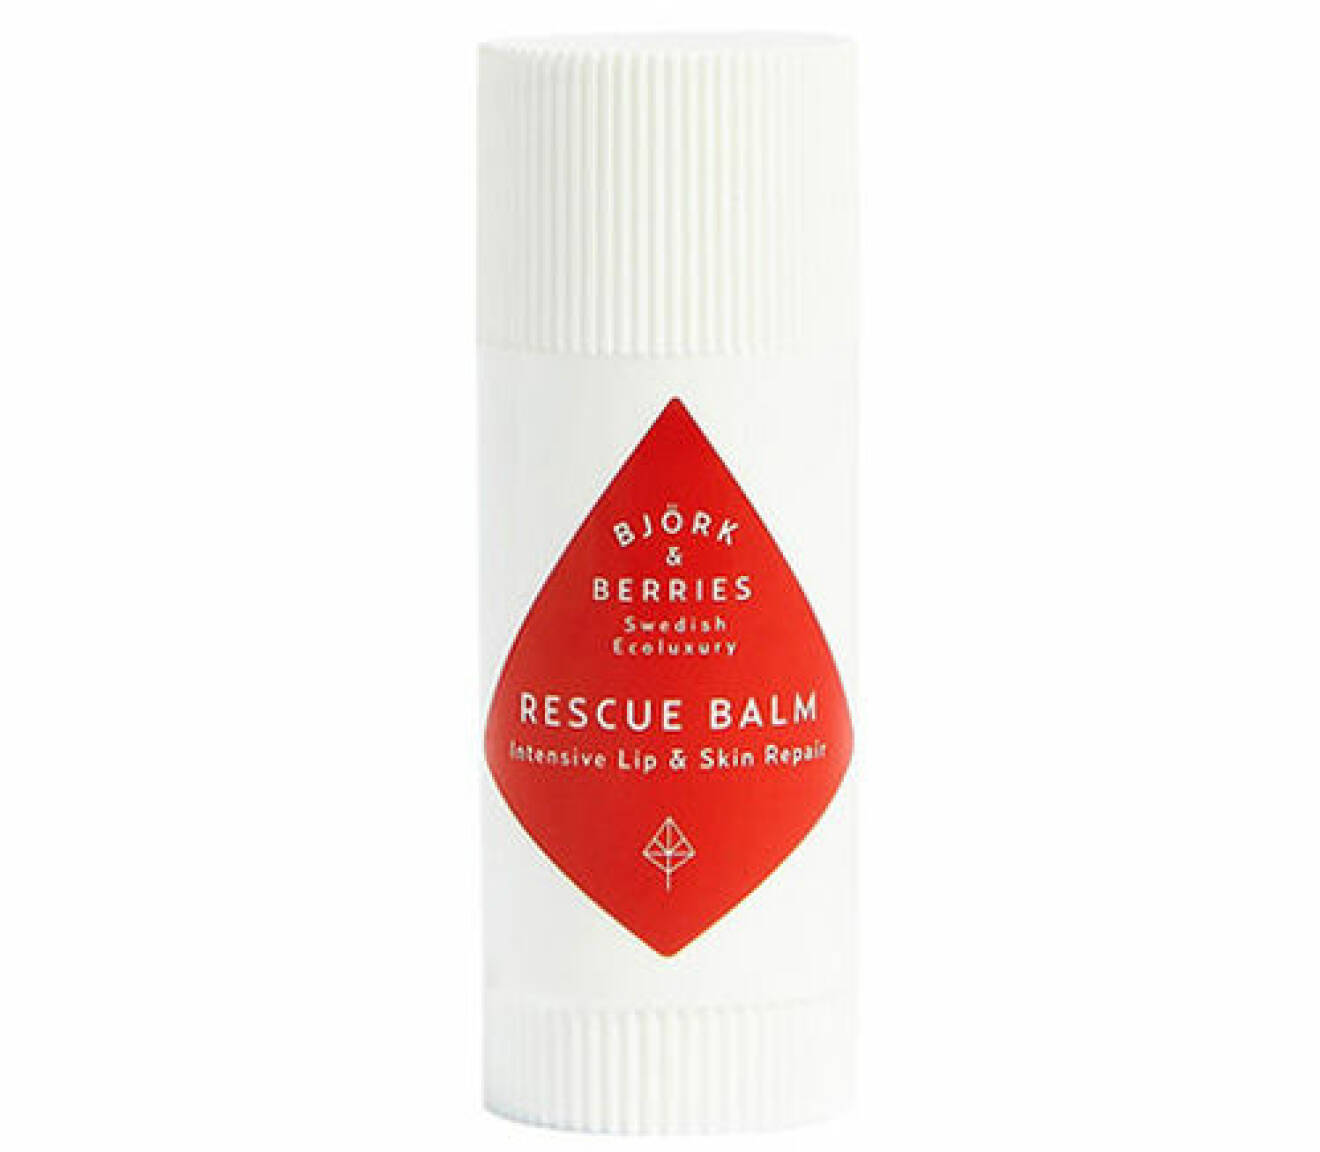 En bild på produkten Björk & Berries – Rescue Balm.